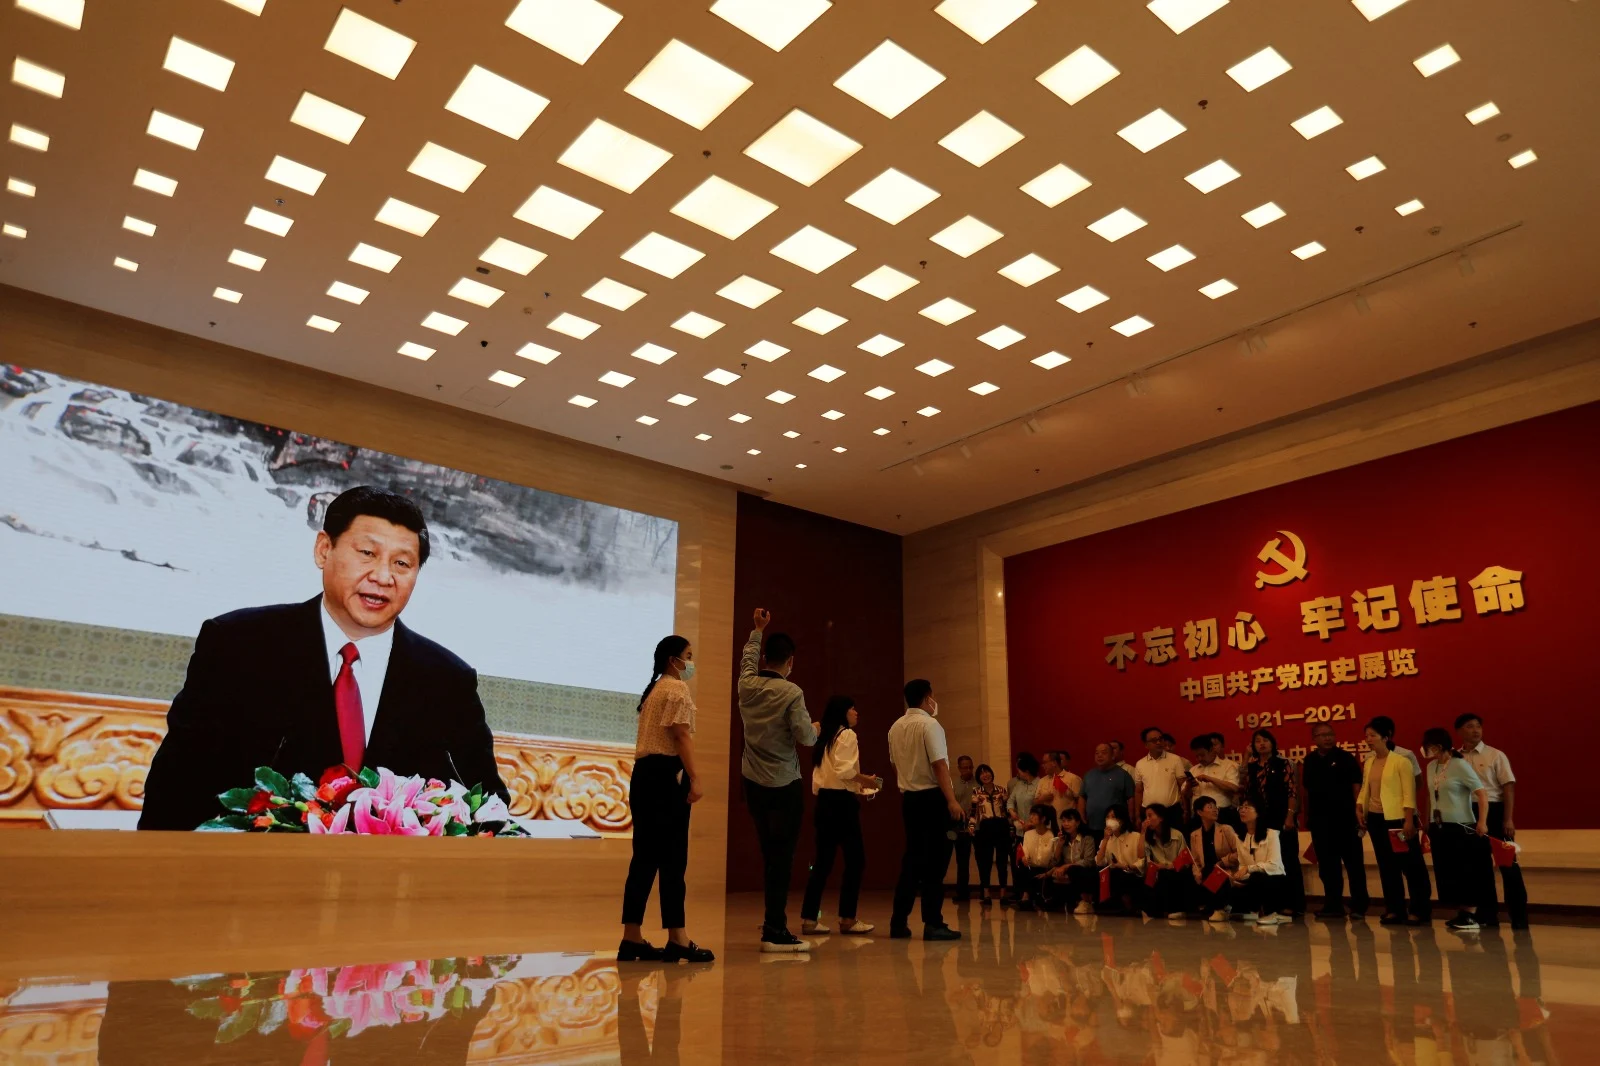 תמונתו של הנשיא שי במוזיאון המפלגה הקומוניסטית בבייג'ינג